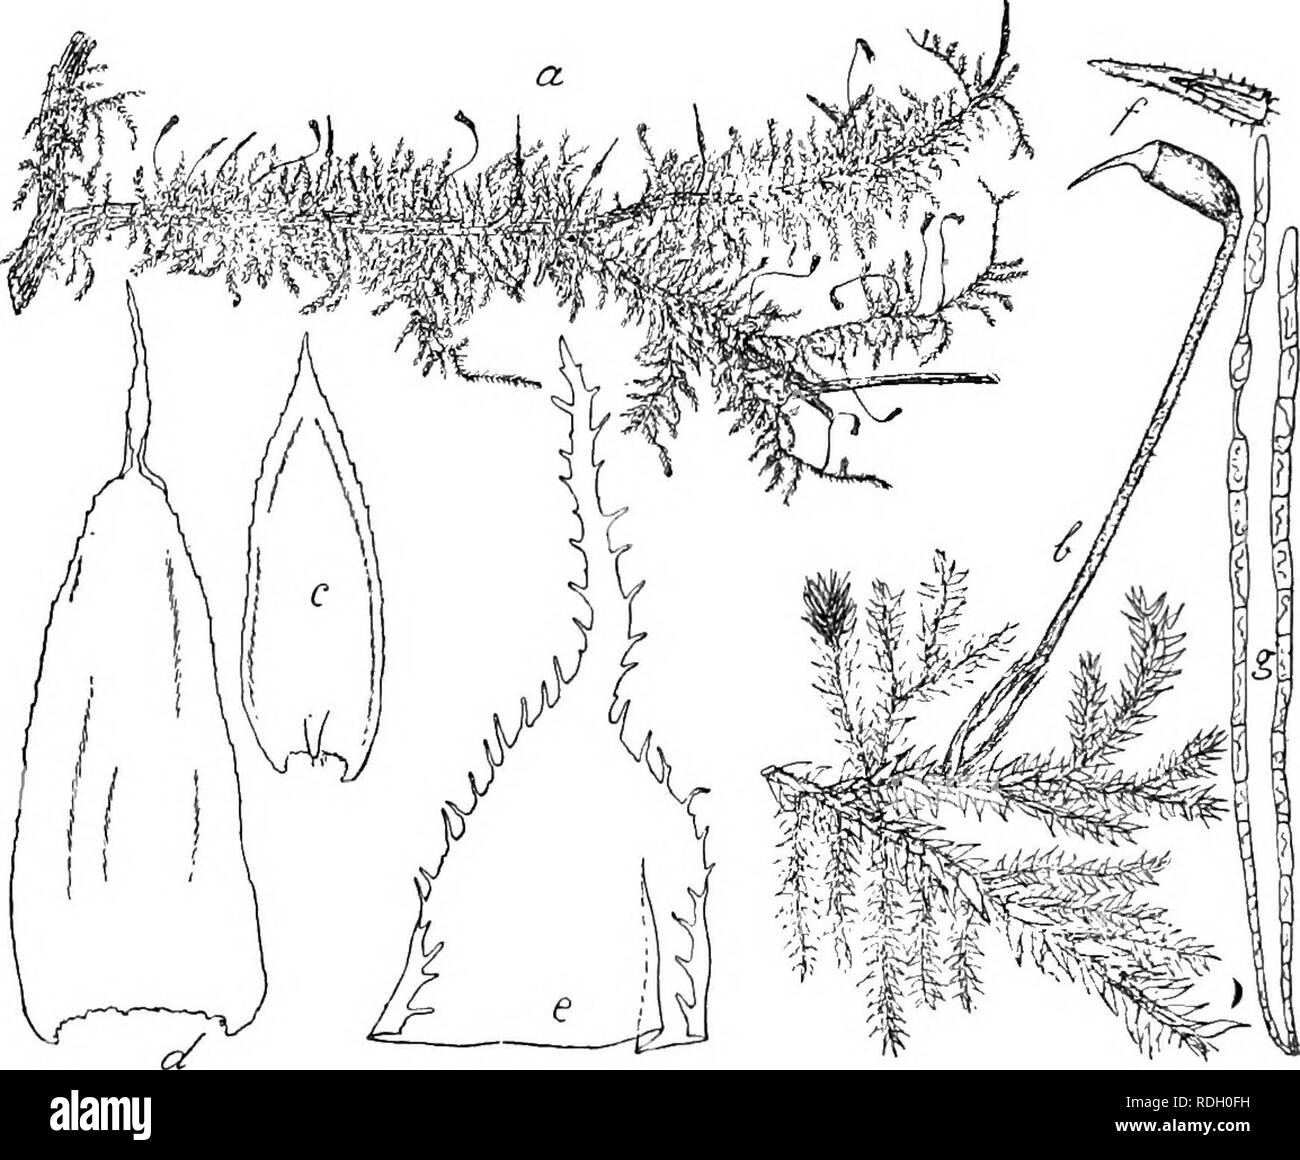 . Flore de Buitenzorg. Botany. 1050 429. Chjietomitrium laiiccolatum jav. II, p. 49, t. 170 (1862). V. D. B. et Lac. in Bryol. Phyllodiocisch. 9 Bluten meist grundaststandig, klein, knospenformig, mit wenigen Paraphysen, Archegonien zahlreich^ aussere HullbUitter klein, kurz, innere ovallanzettlich, kurz Fig 178.. Chaetomitrium lajiceolatum Lac. u. Habitusbild. (natiirl. Grbsse). h. Zweig mit Sporogon . u. Astblatt Y- d- Stengelblatt Y e. Spitze eines Perichaetialblattes '/• /. Haube p. g. Fadenformige Biutkiirpor '/ gespitzt, aufrecht, oberwarts cilienartig zuriickgebogen gezah- nelt, rippen Stock Photo